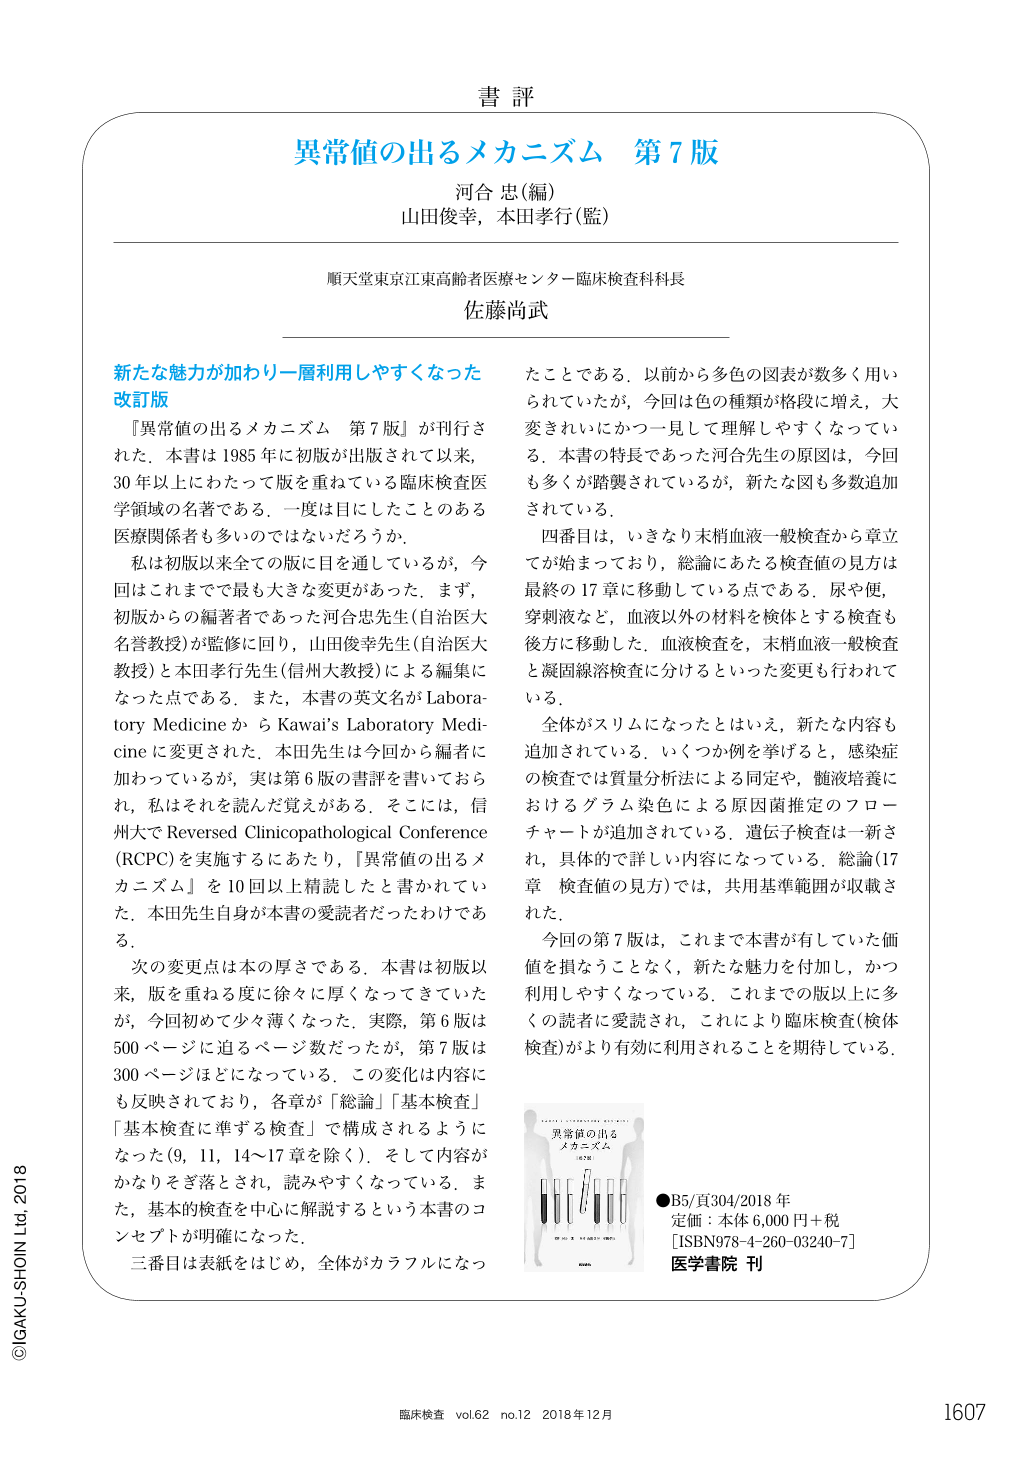 書評 異常値の出るメカニズム 第7版 (臨床検査 62巻12号) | 医書.jp